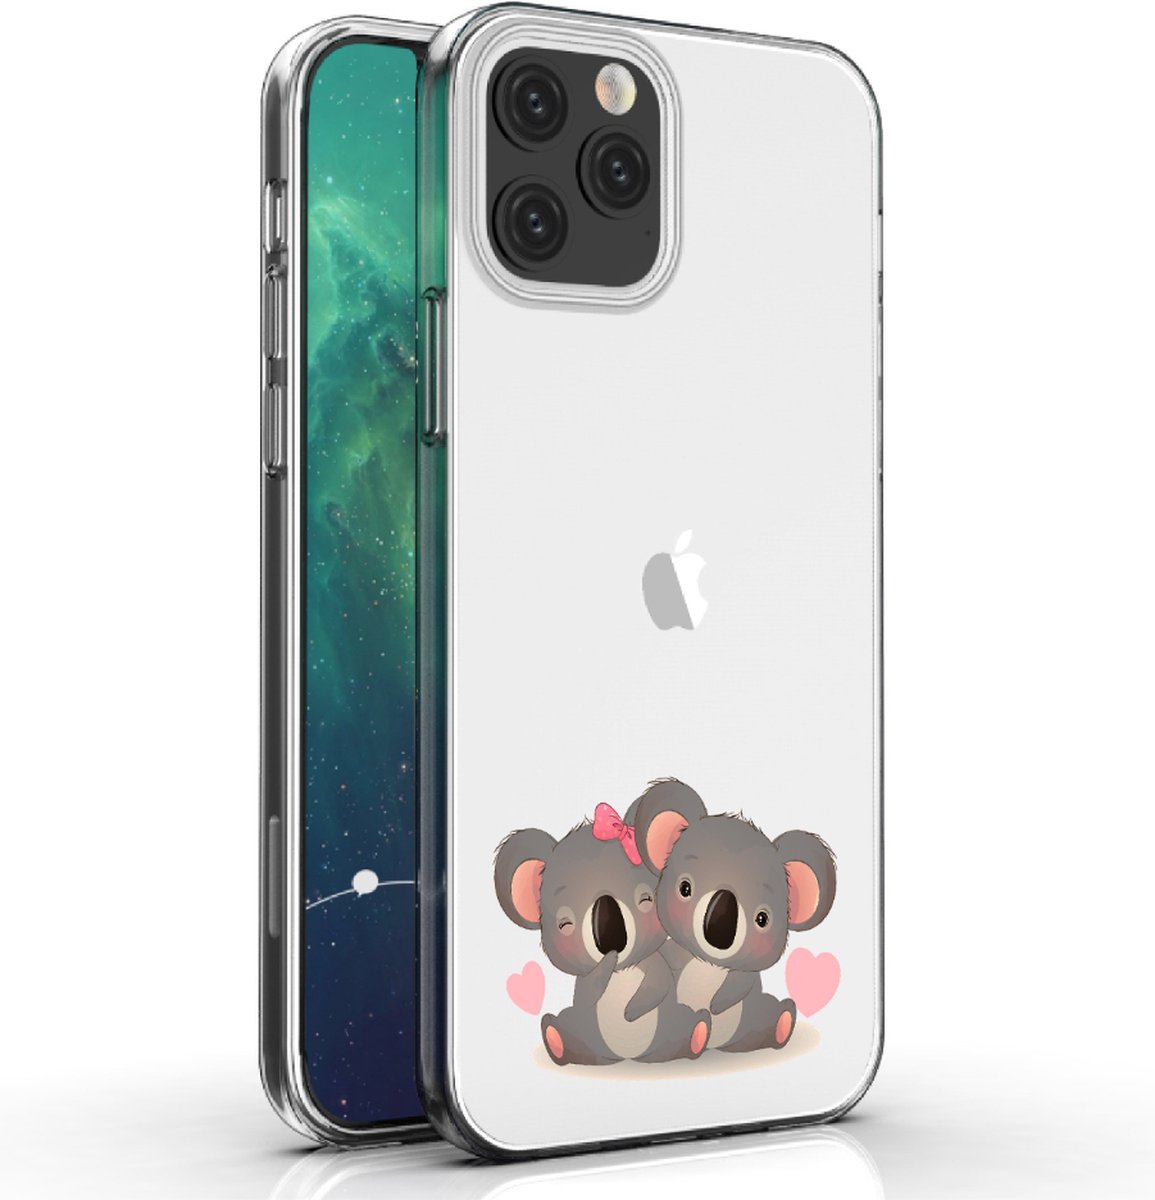 Apple Iphone 12 Mini telefoonhoesje transparant siliconen hoesje - Koalabeertjes